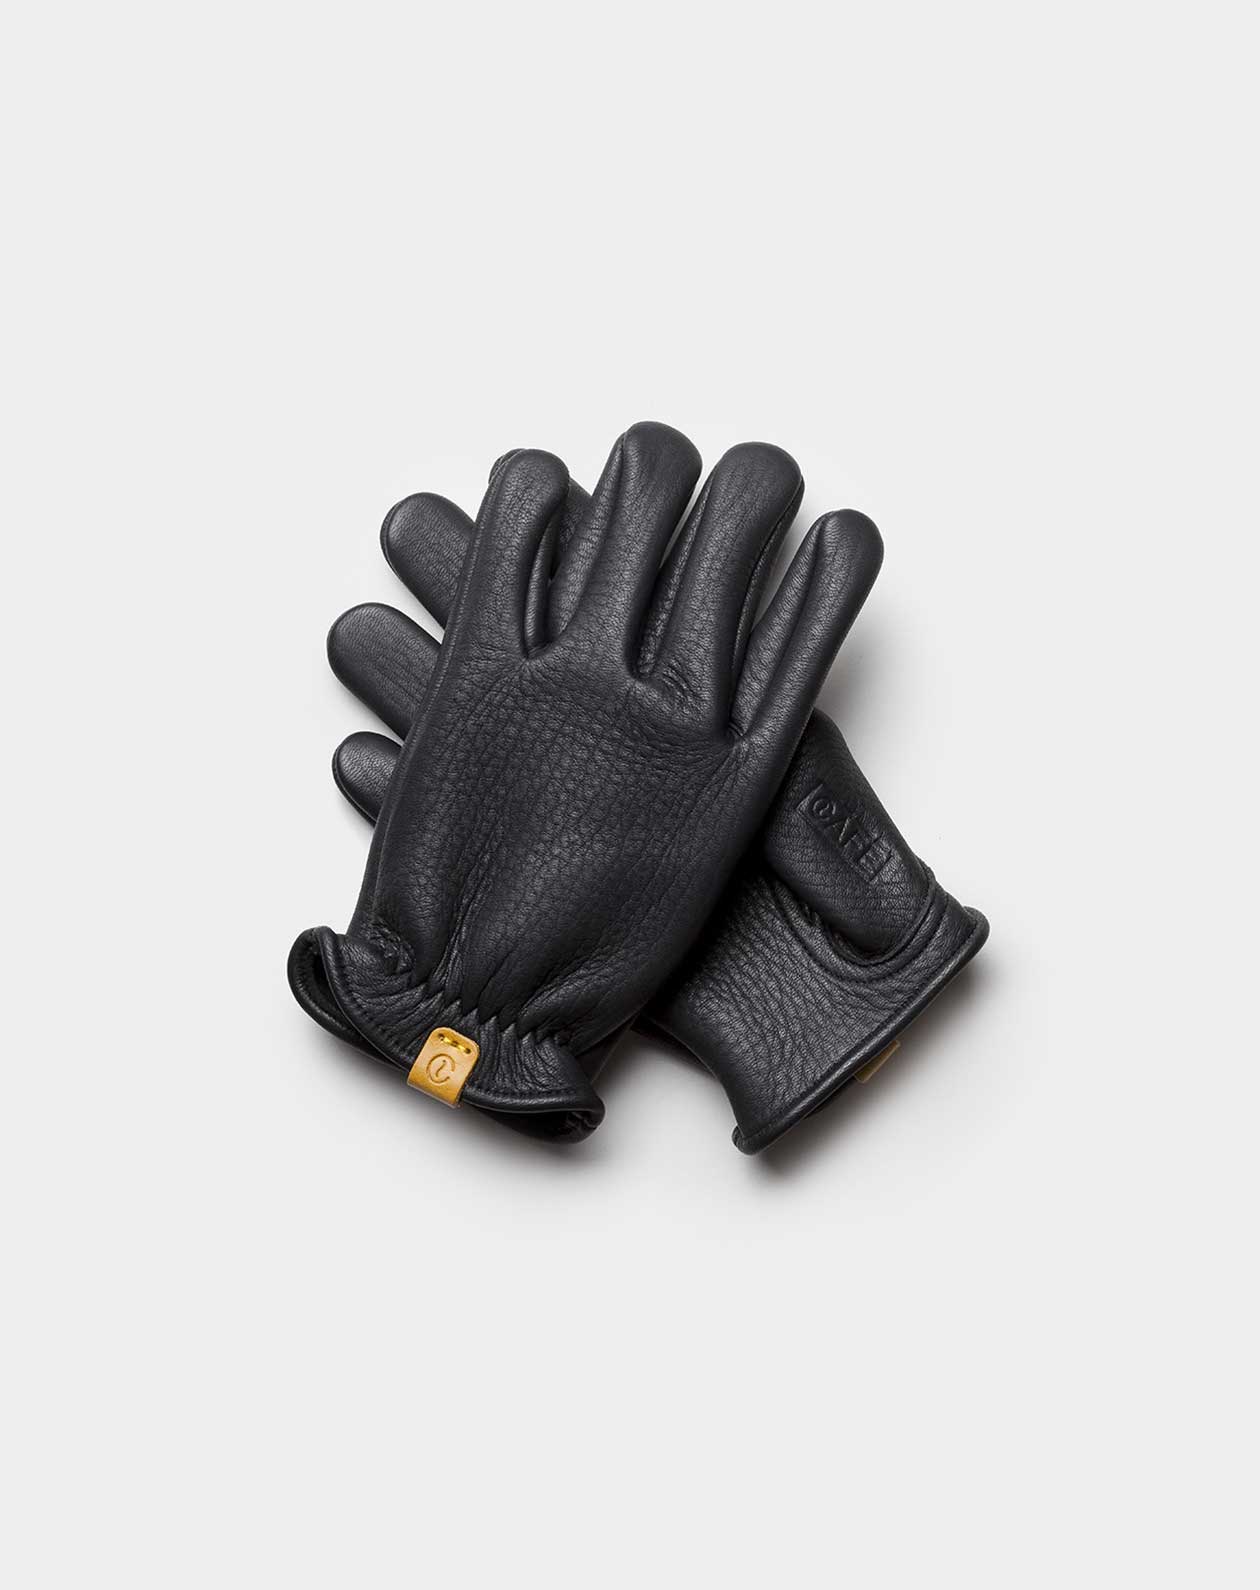 elkskin gloves black front